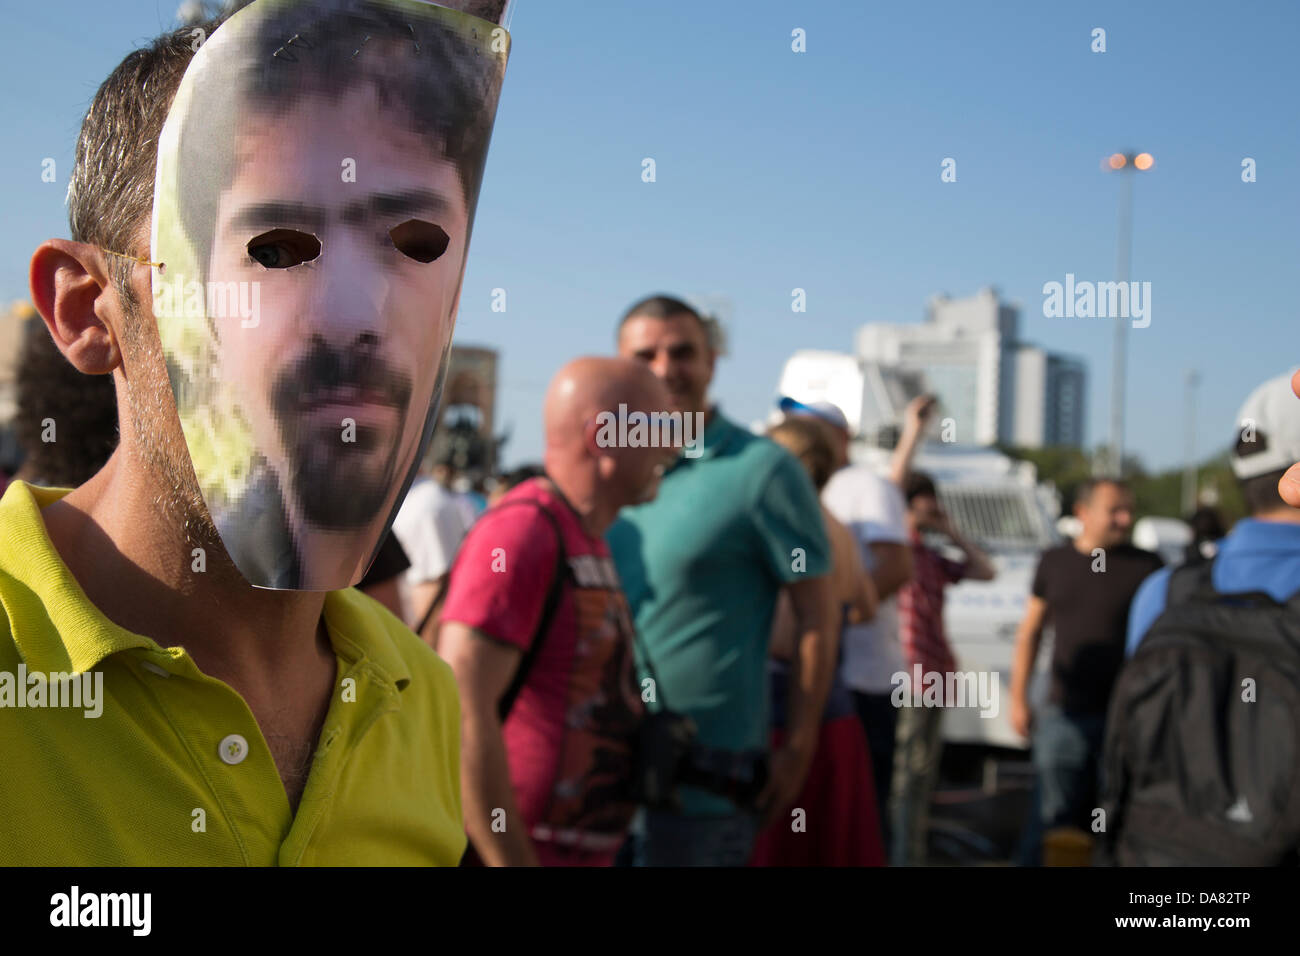 Estambul, Turquía -- un manifestante usando el recorte foto de Ethem Sarisuluk el rostro como una máscara hecha en casa. Ethem, un joven civil, fue asesinado por una bala de la policía a la cabeza, y el autor fue puesto en libertad, ya que el tribunal resolvió "autodefensa" en favor de los policías involucrados. La plaza Taksim, en Estambul. Julio, 07, 2013. Foto por Bikem Ekberzade Foto de stock